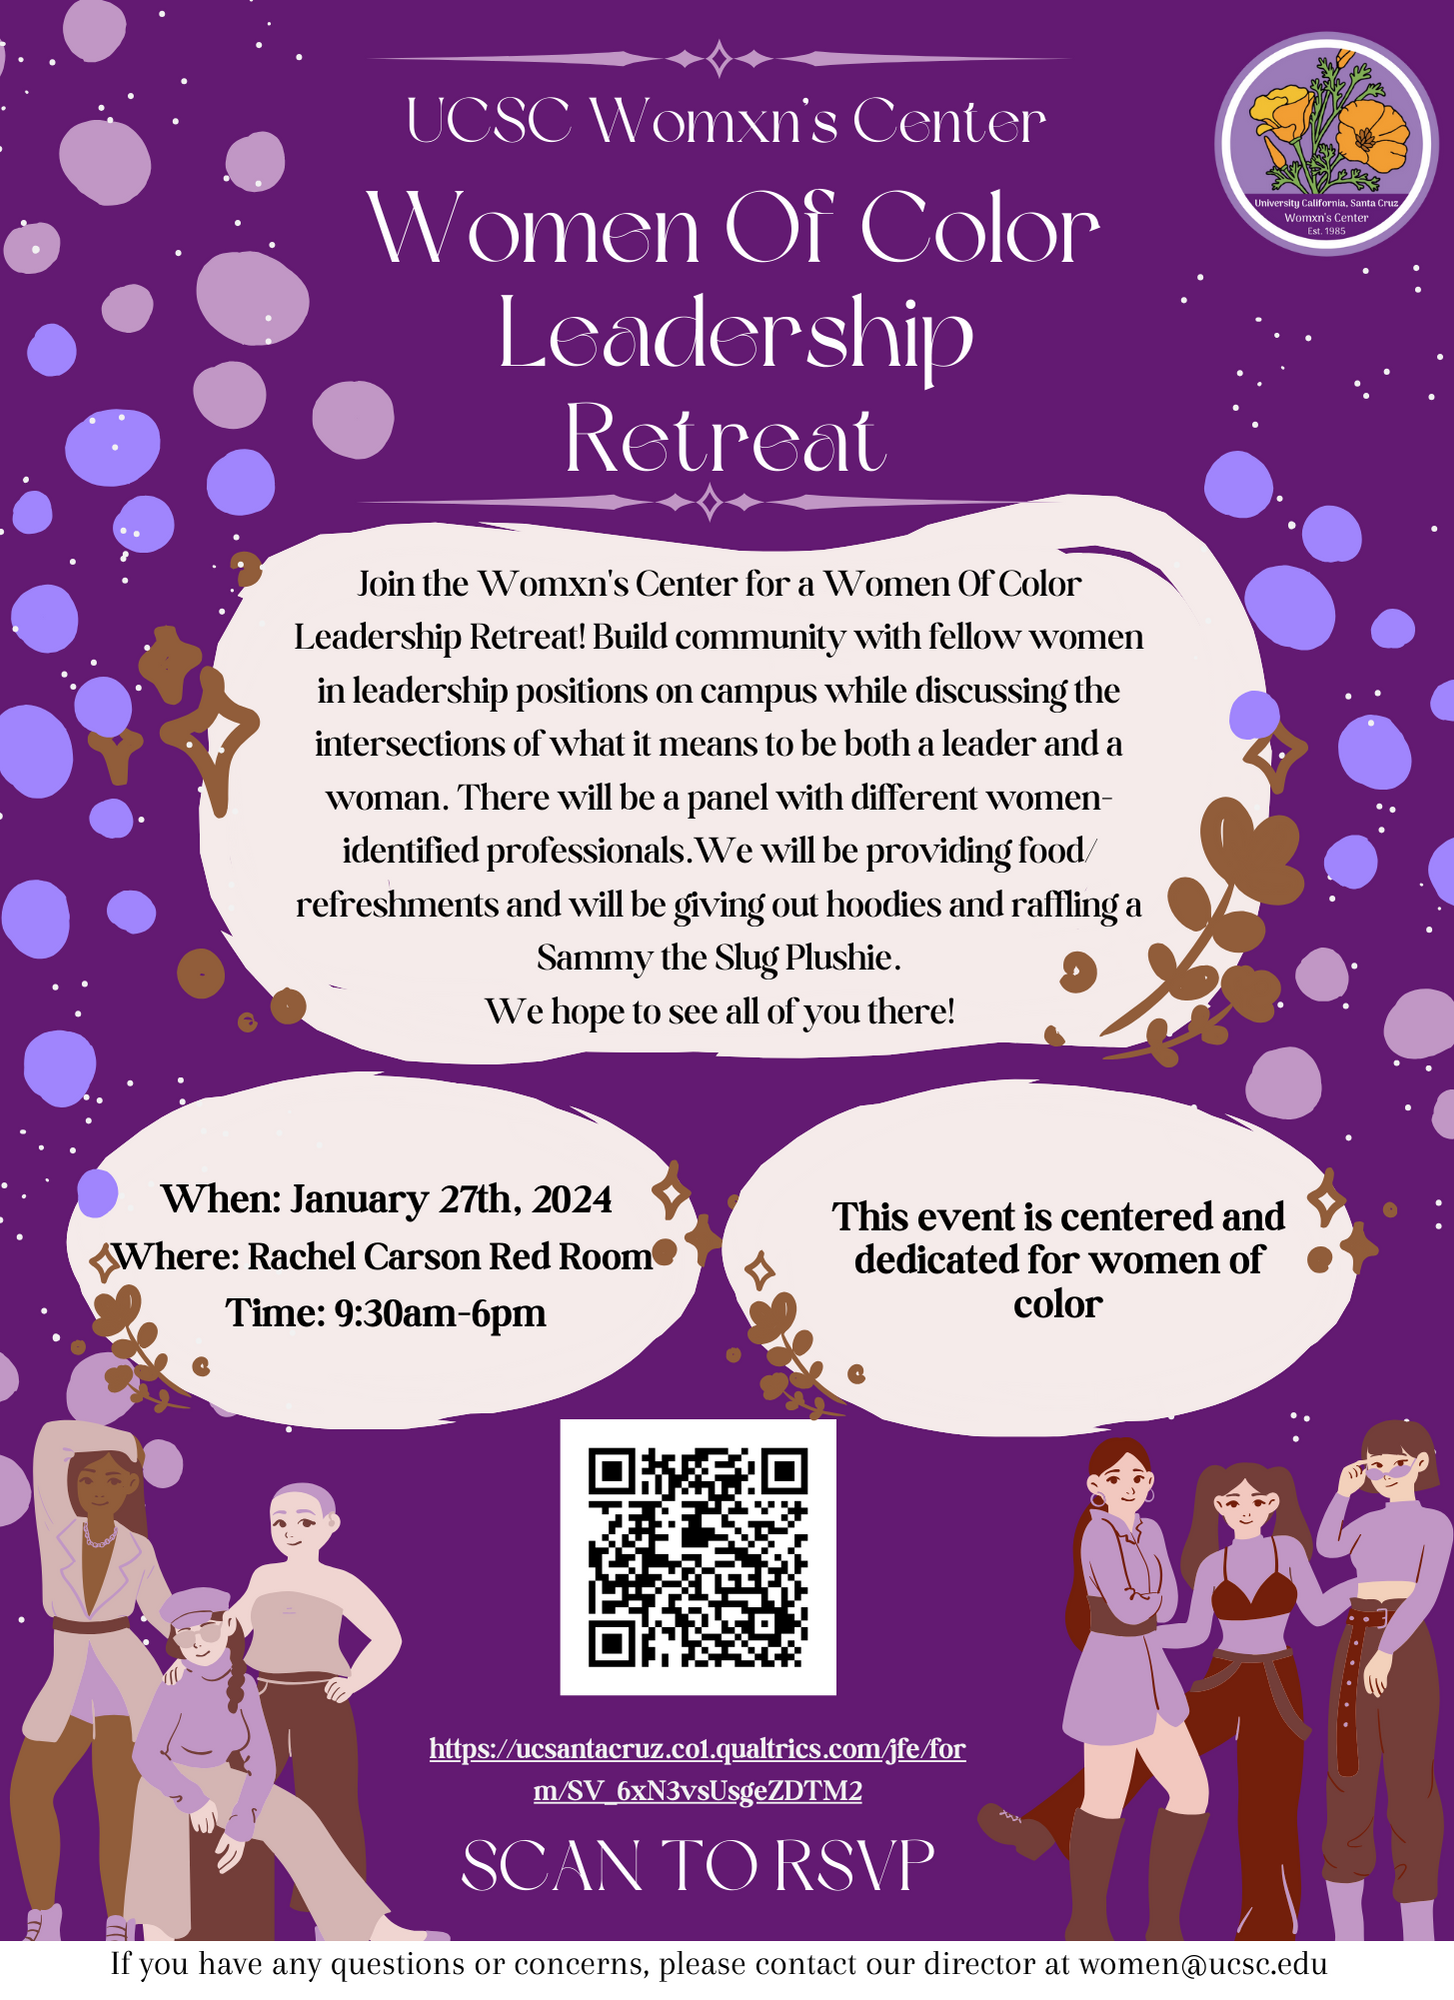 women-in-leadership-8-11-in.png